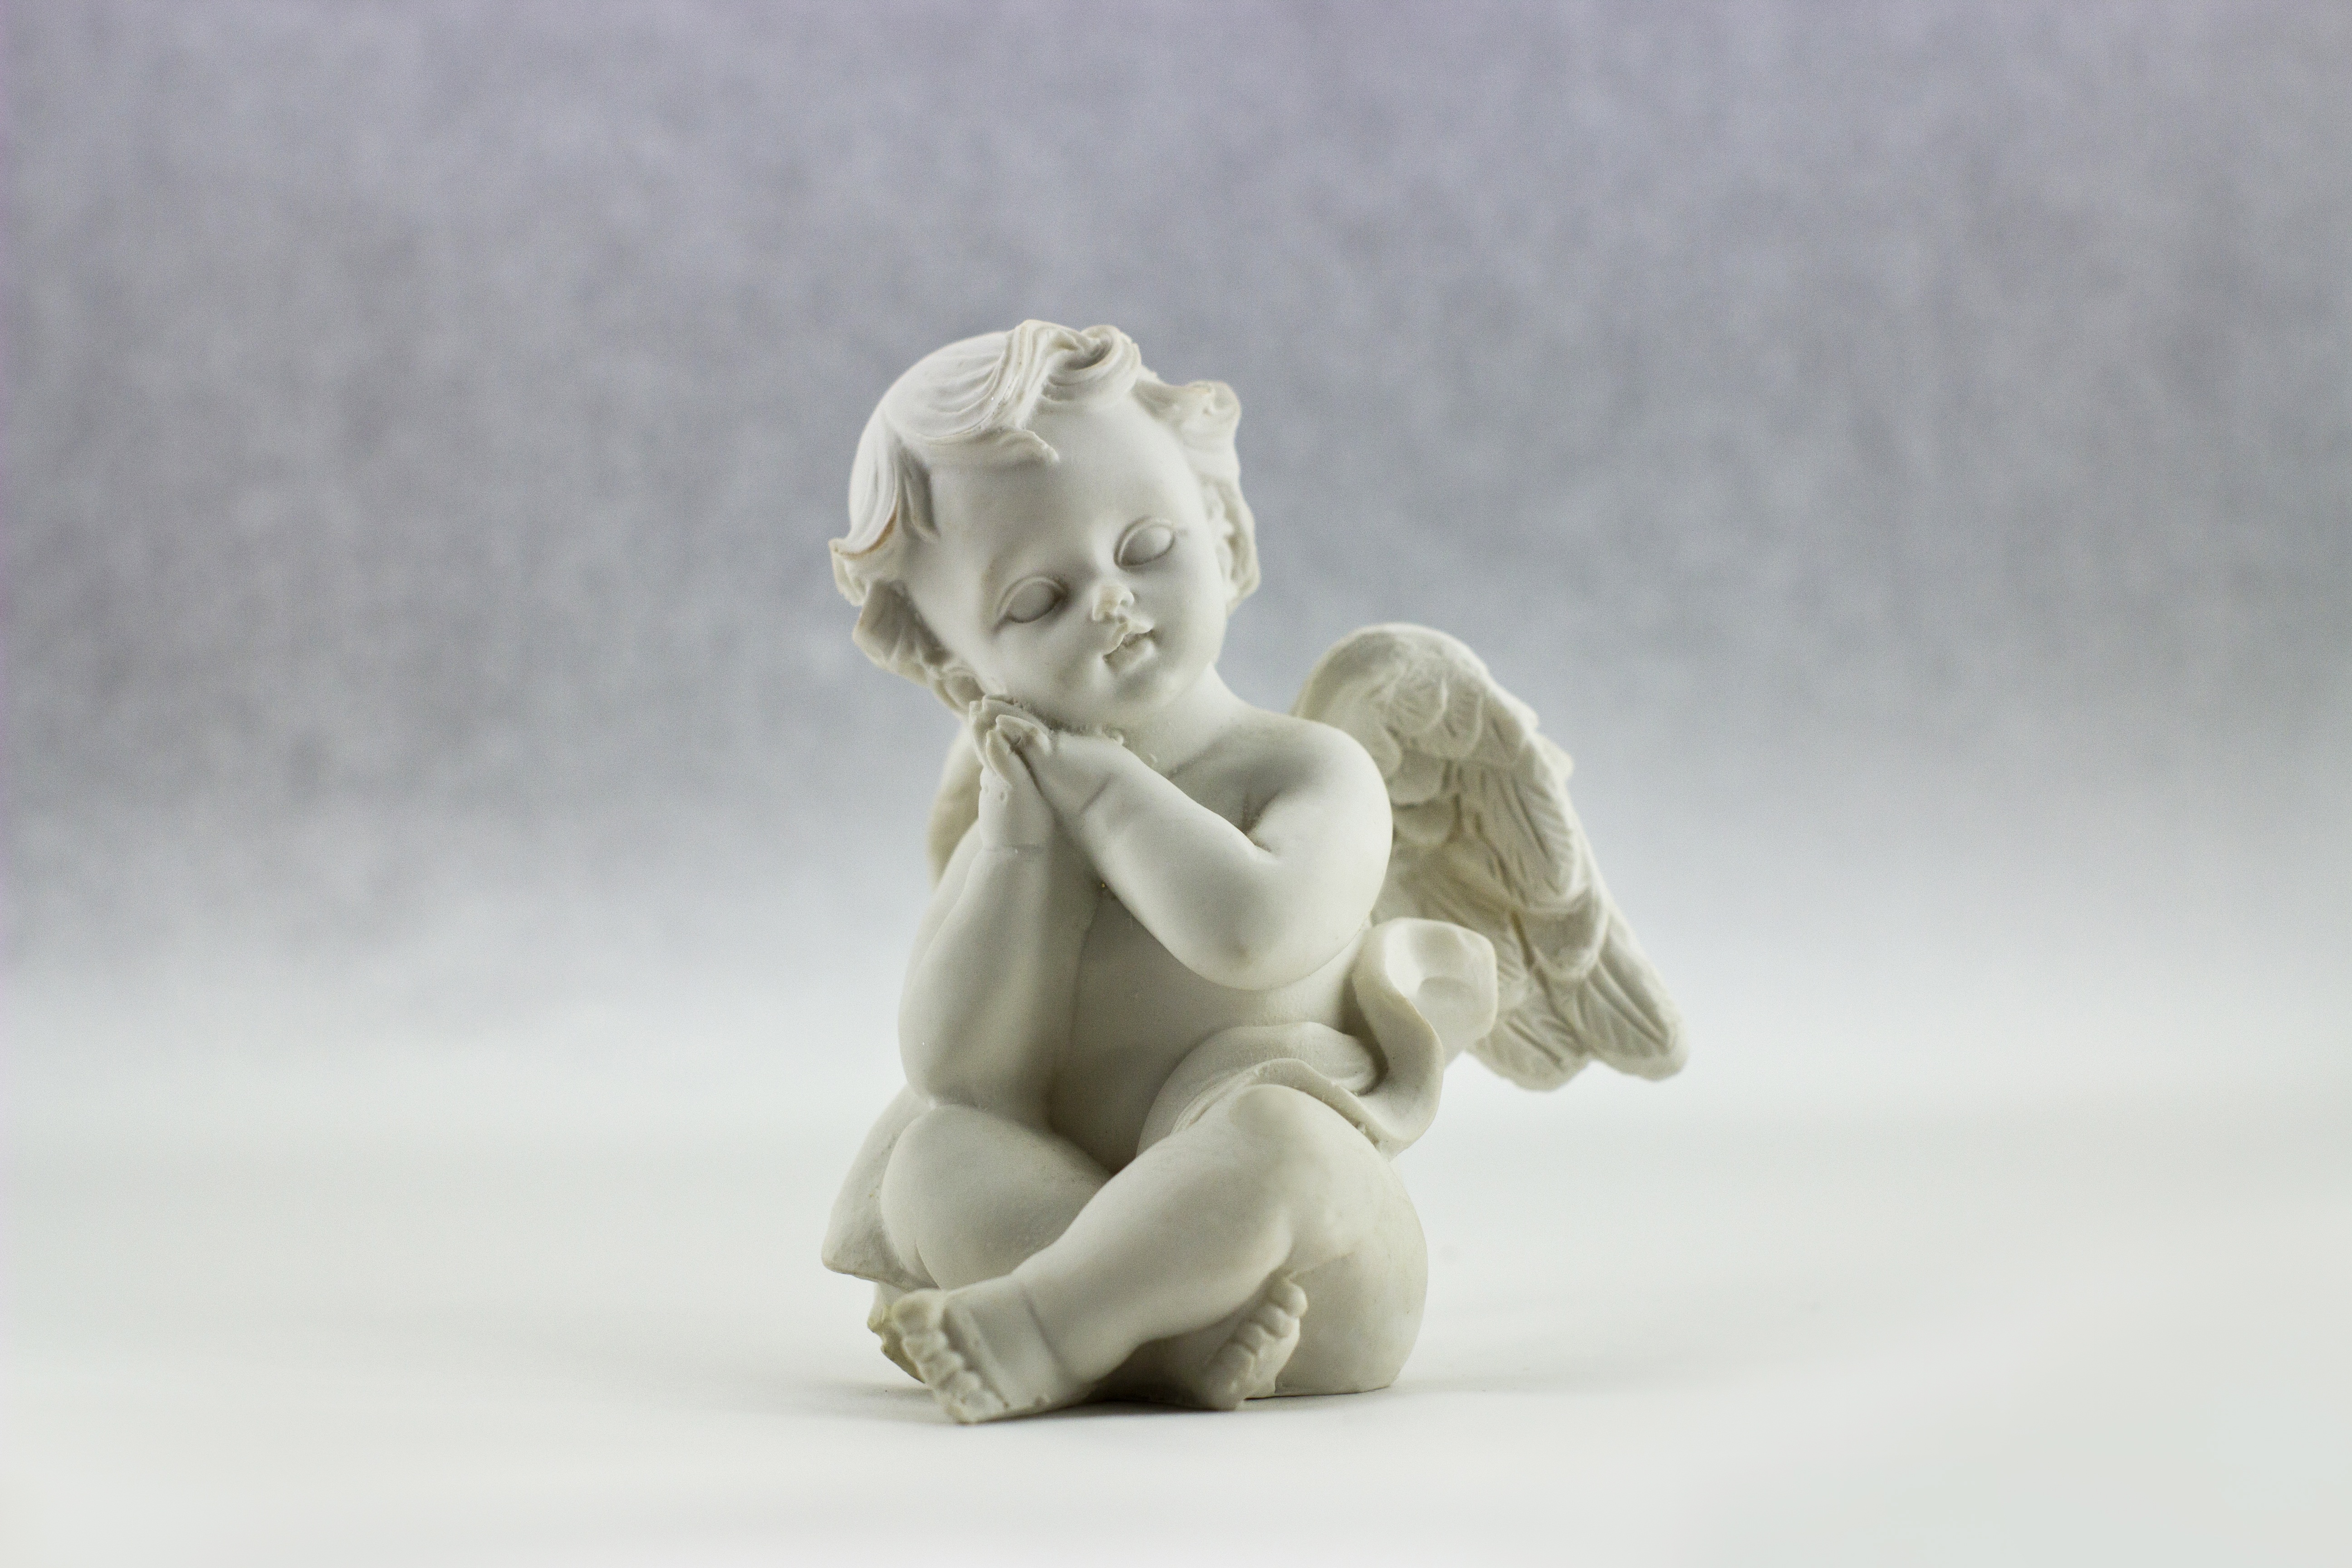 Angel Cherub Minimalist Statue 5184x3456